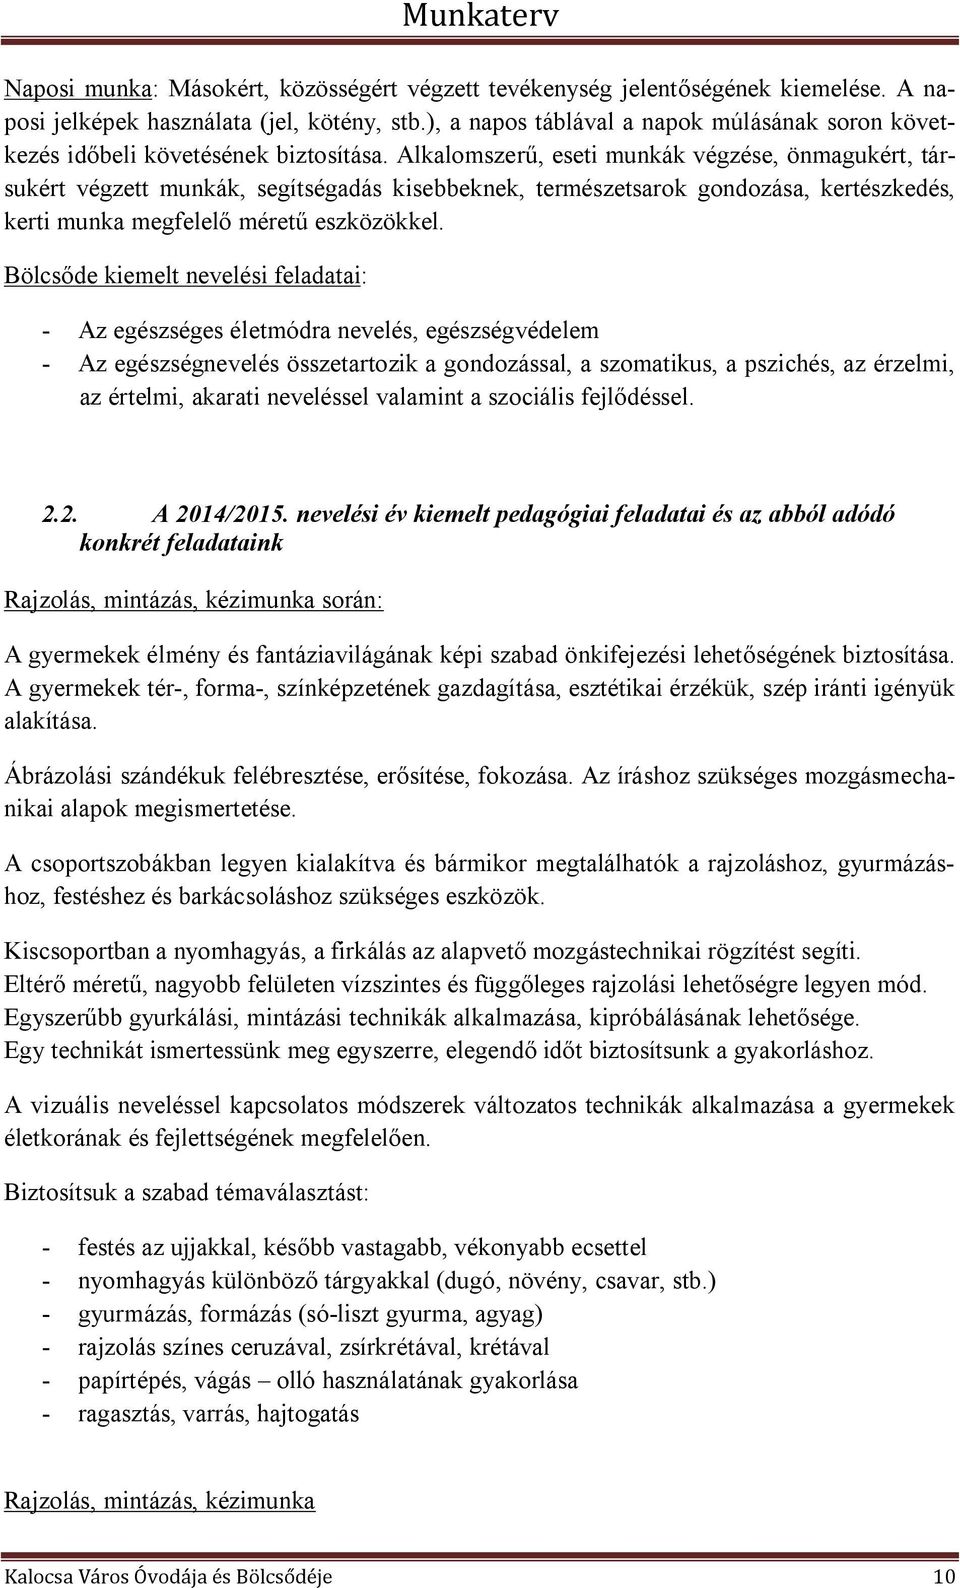 Kalocsa Város Óvodája és Bölcsődéje 2014/2015. nevelési év Munkaterv - PDF  Ingyenes letöltés